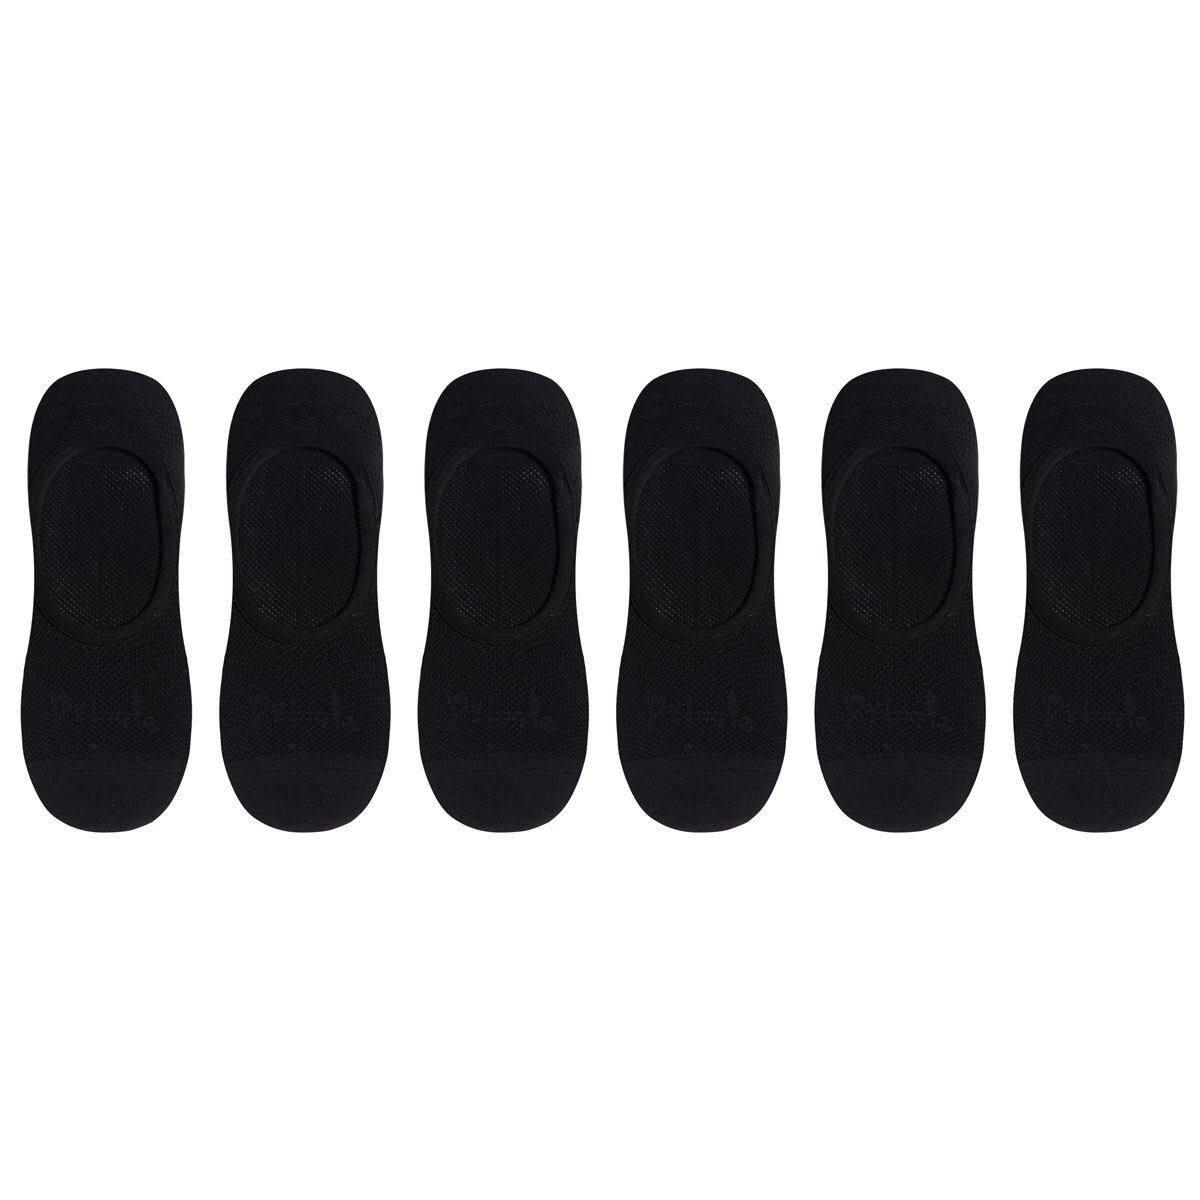 Pringle Men's 2 x 3 Pack Invisible Socks in Black, Size 7-11